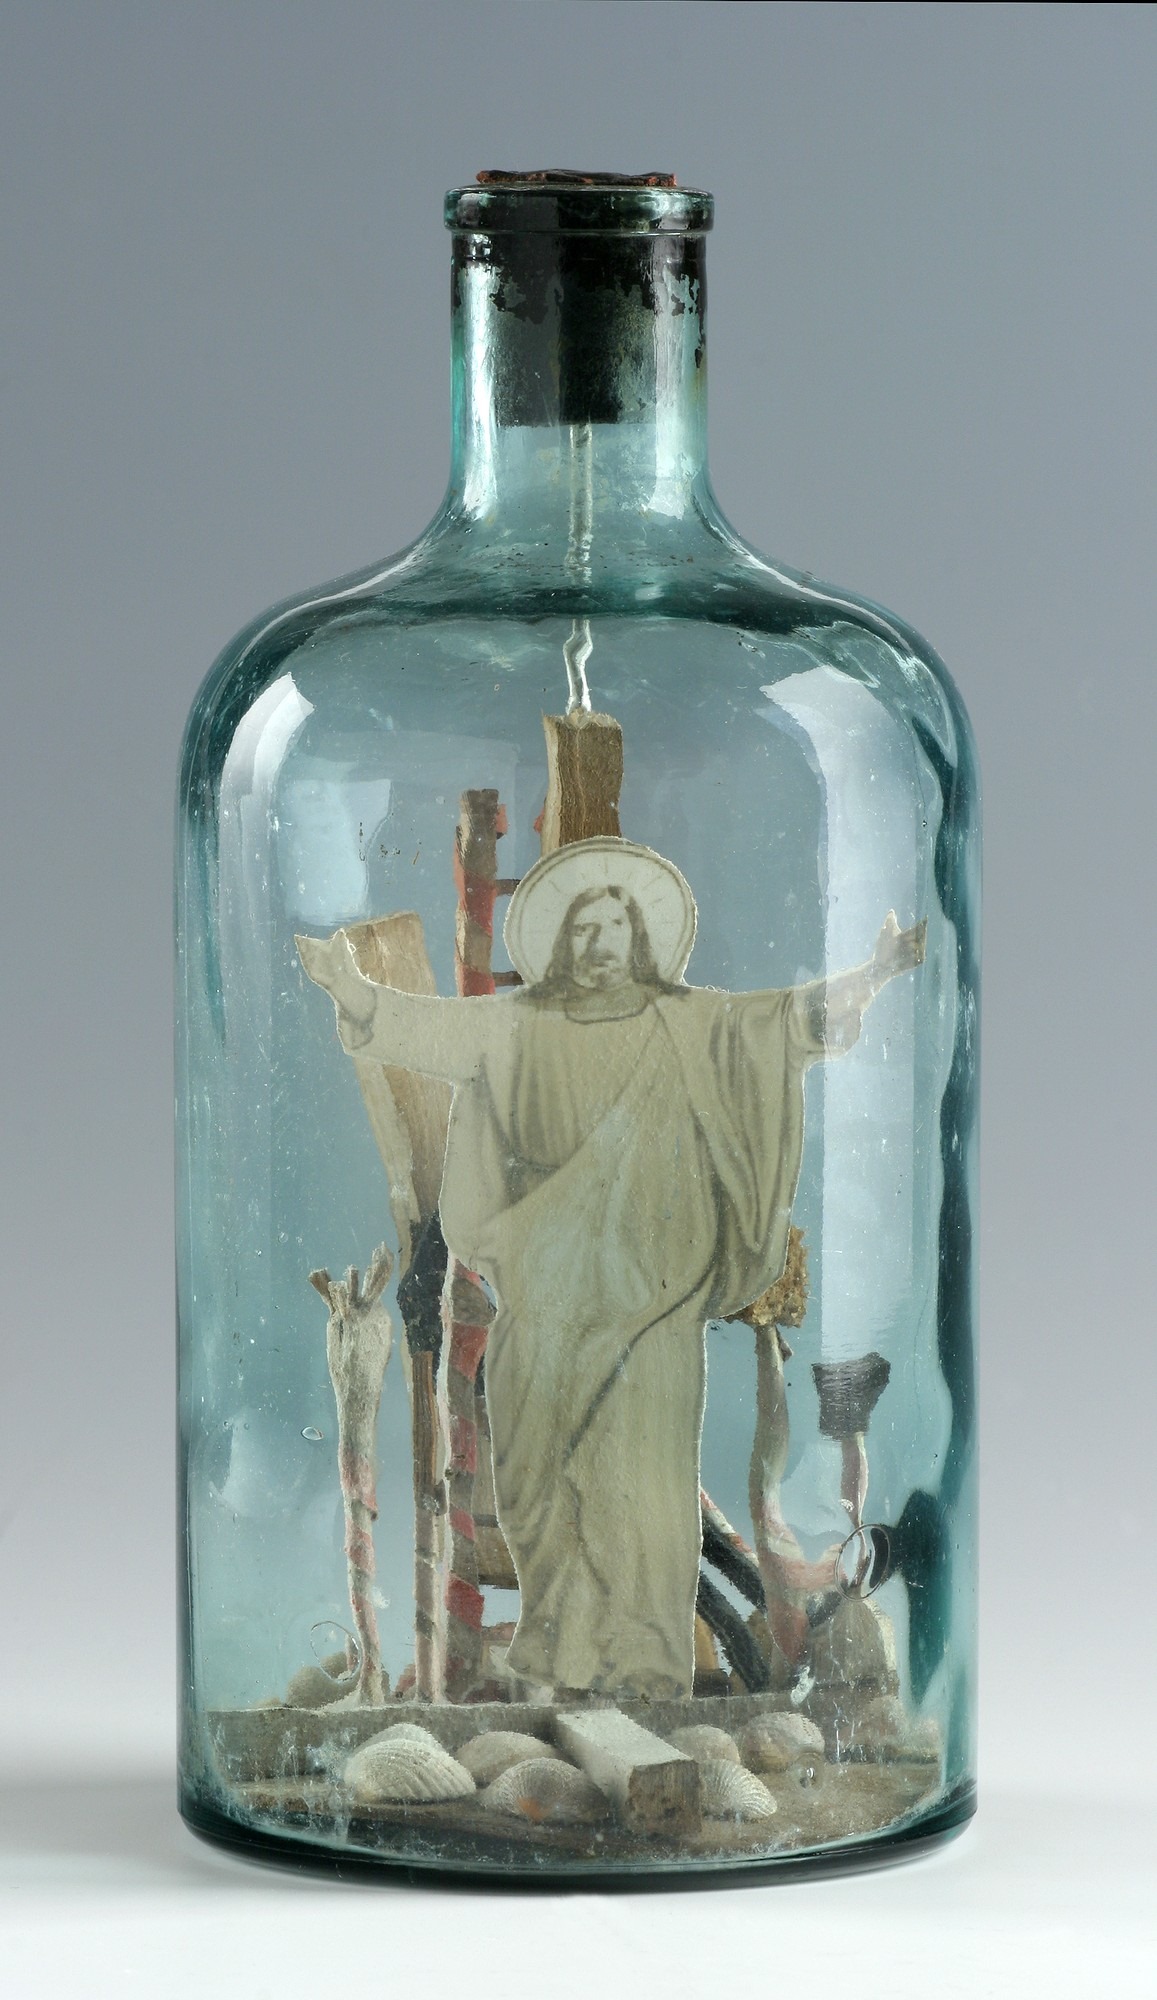 w butelce z białego szkła znajduje się grafika ze Zmartwychwstałym Chrystusem